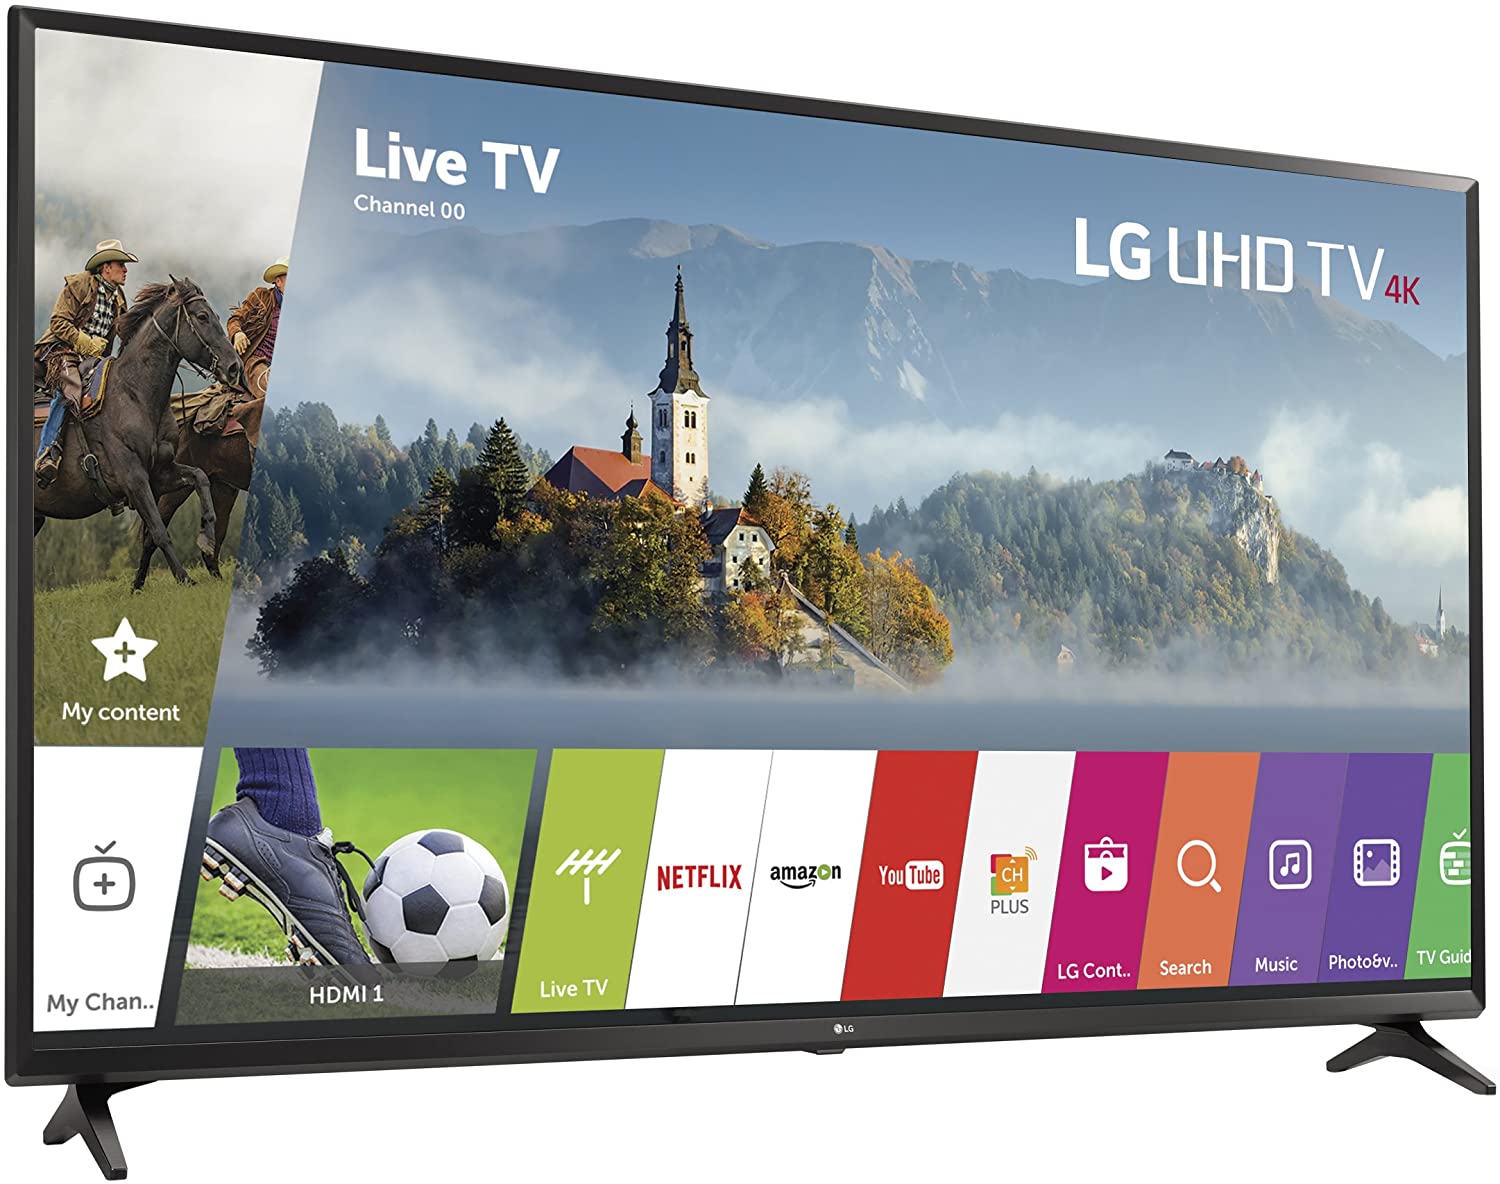 LG 49"4K HDR LED TV SMART